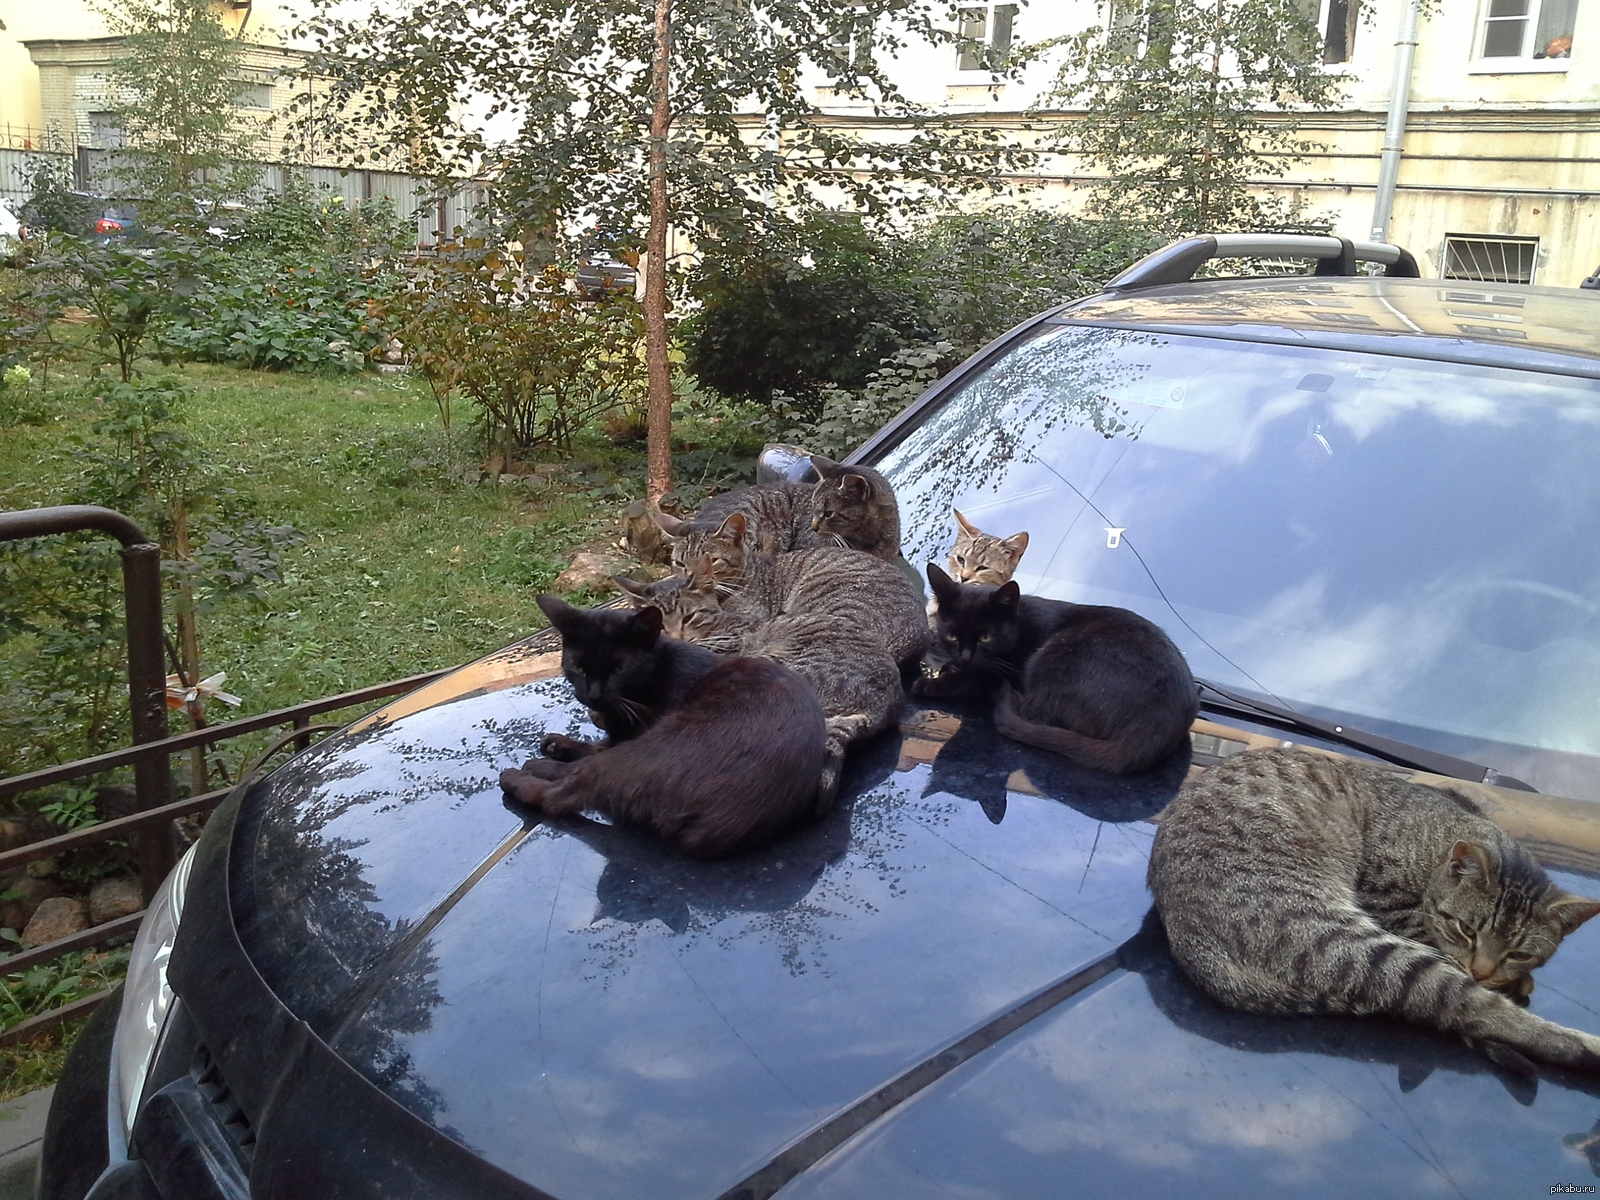 Видео на капоте машины. Кот на капоте. Коты на капоте. Кот в машине. Кошка на капоте машины.